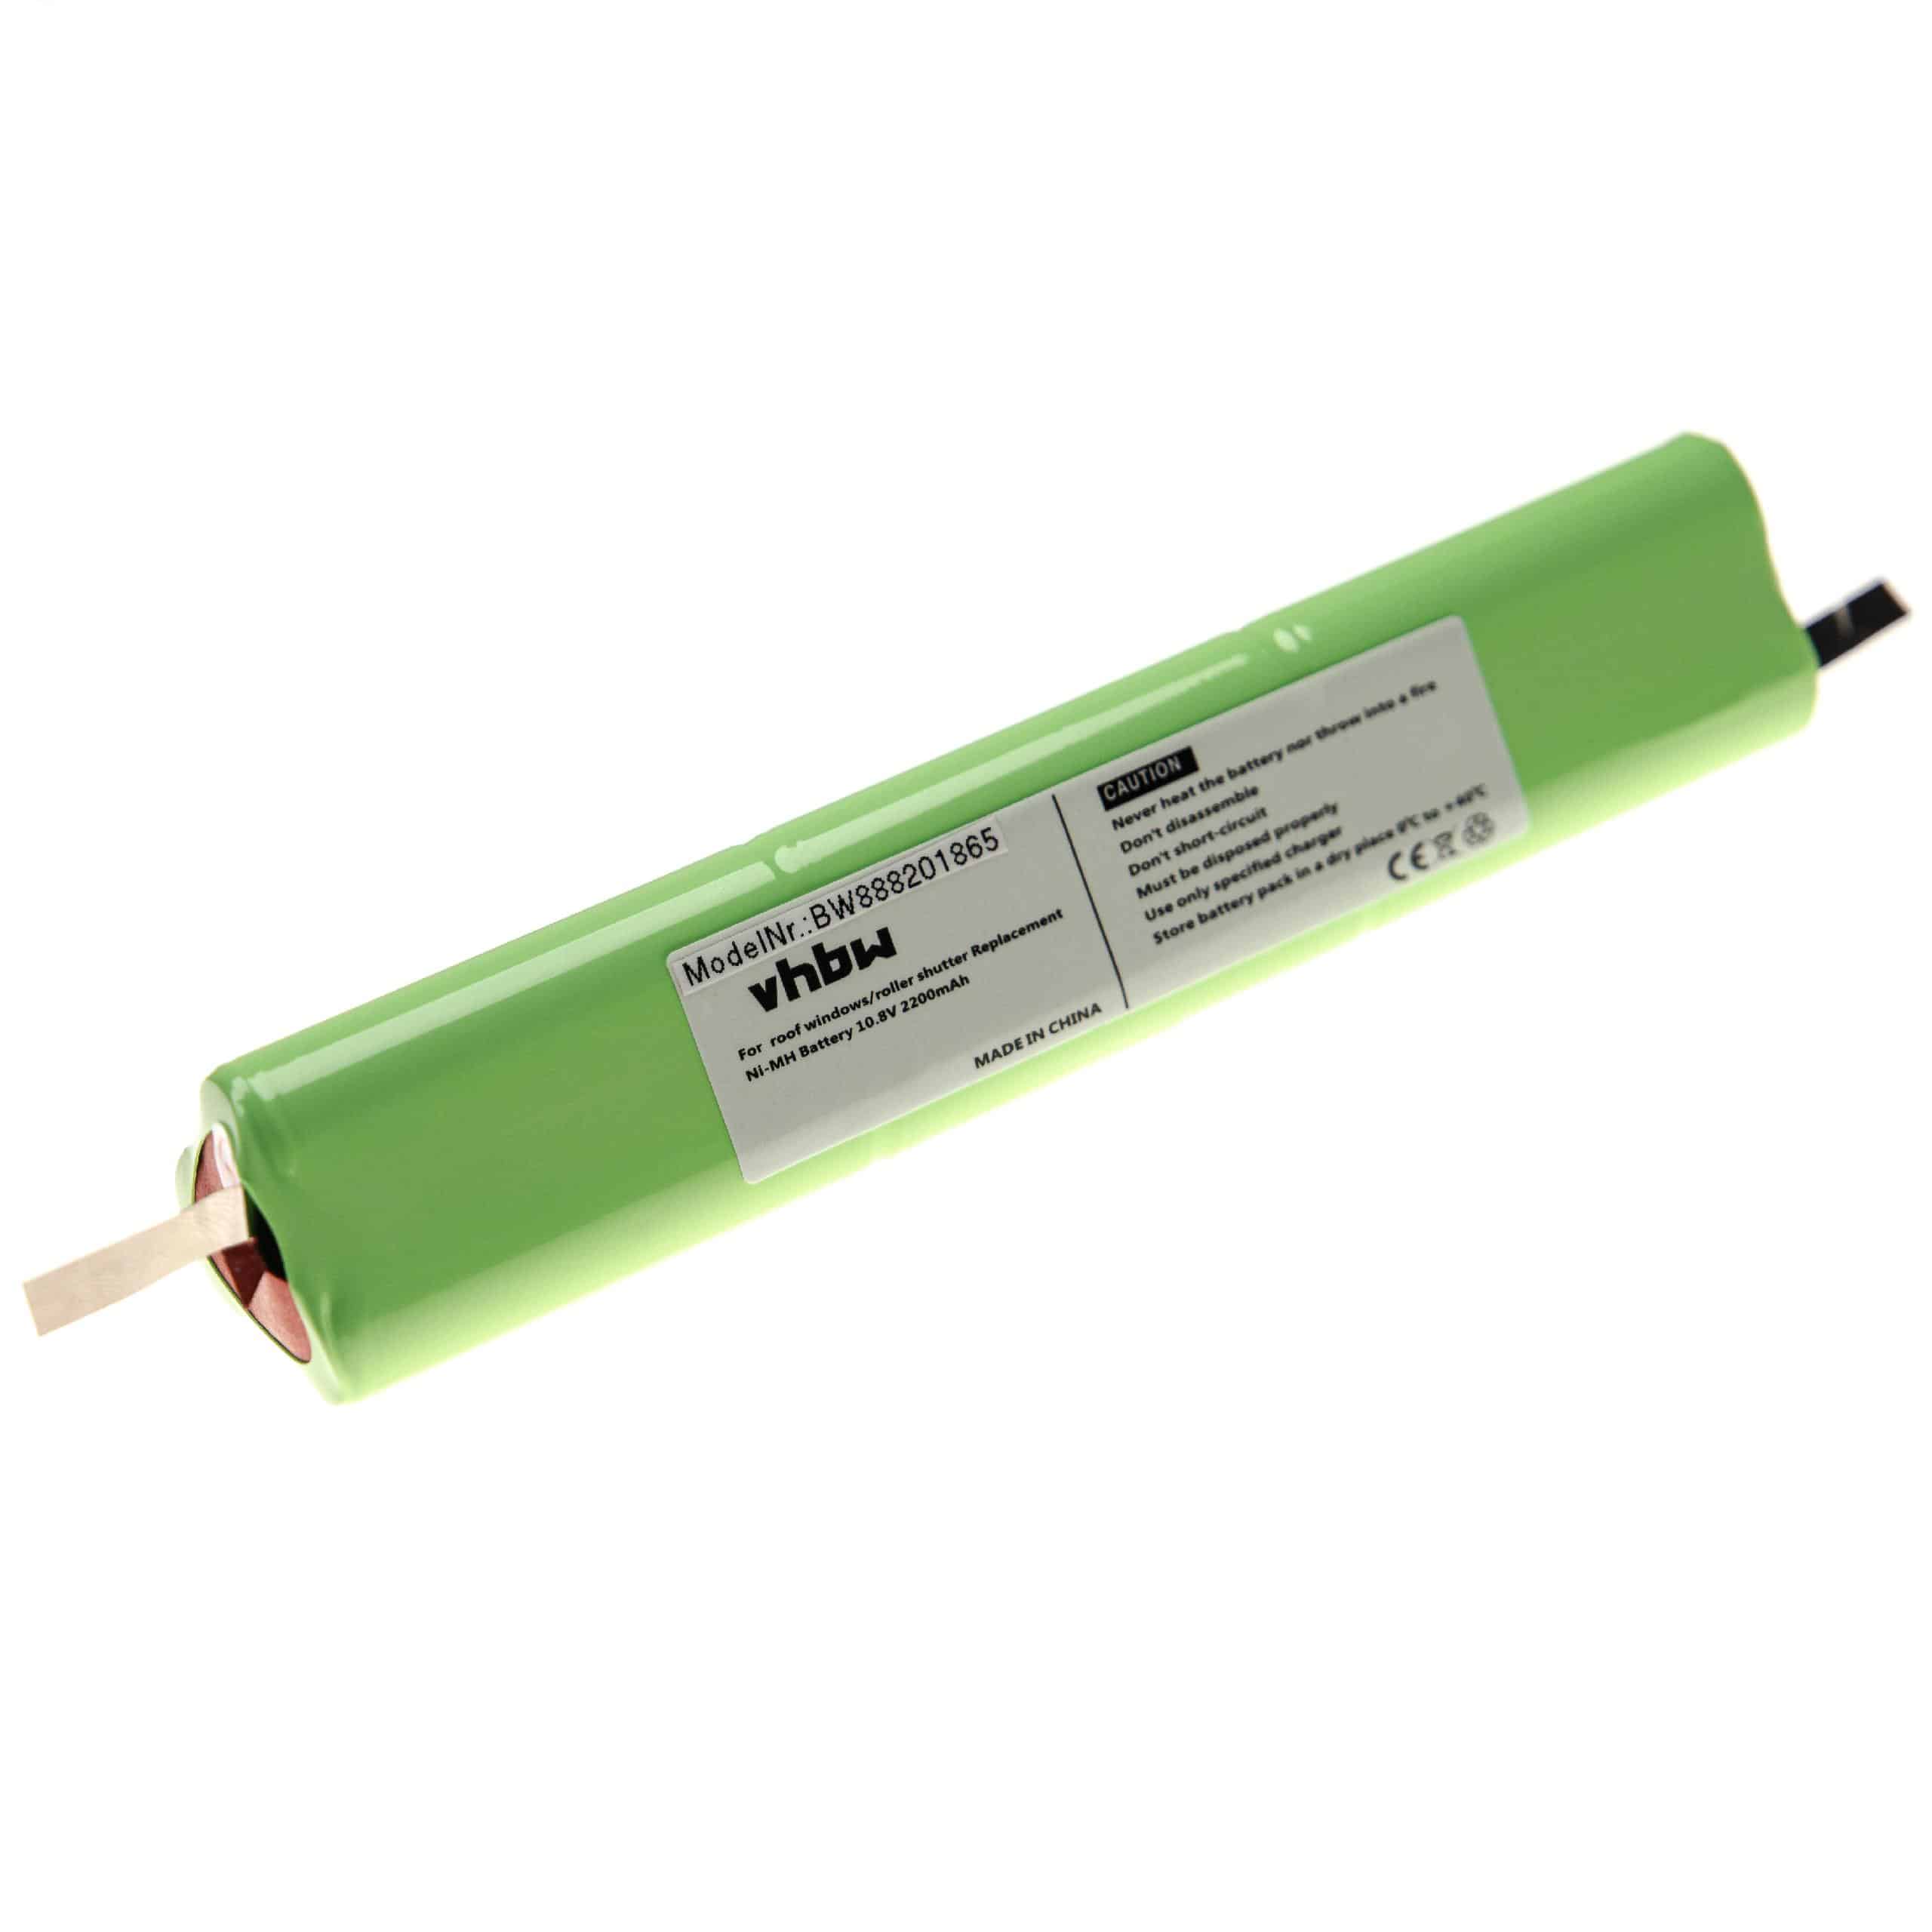 Roller Blind Battery Replacement for Velux 946933, 946930 - 2200mAh 10.8V NiMH